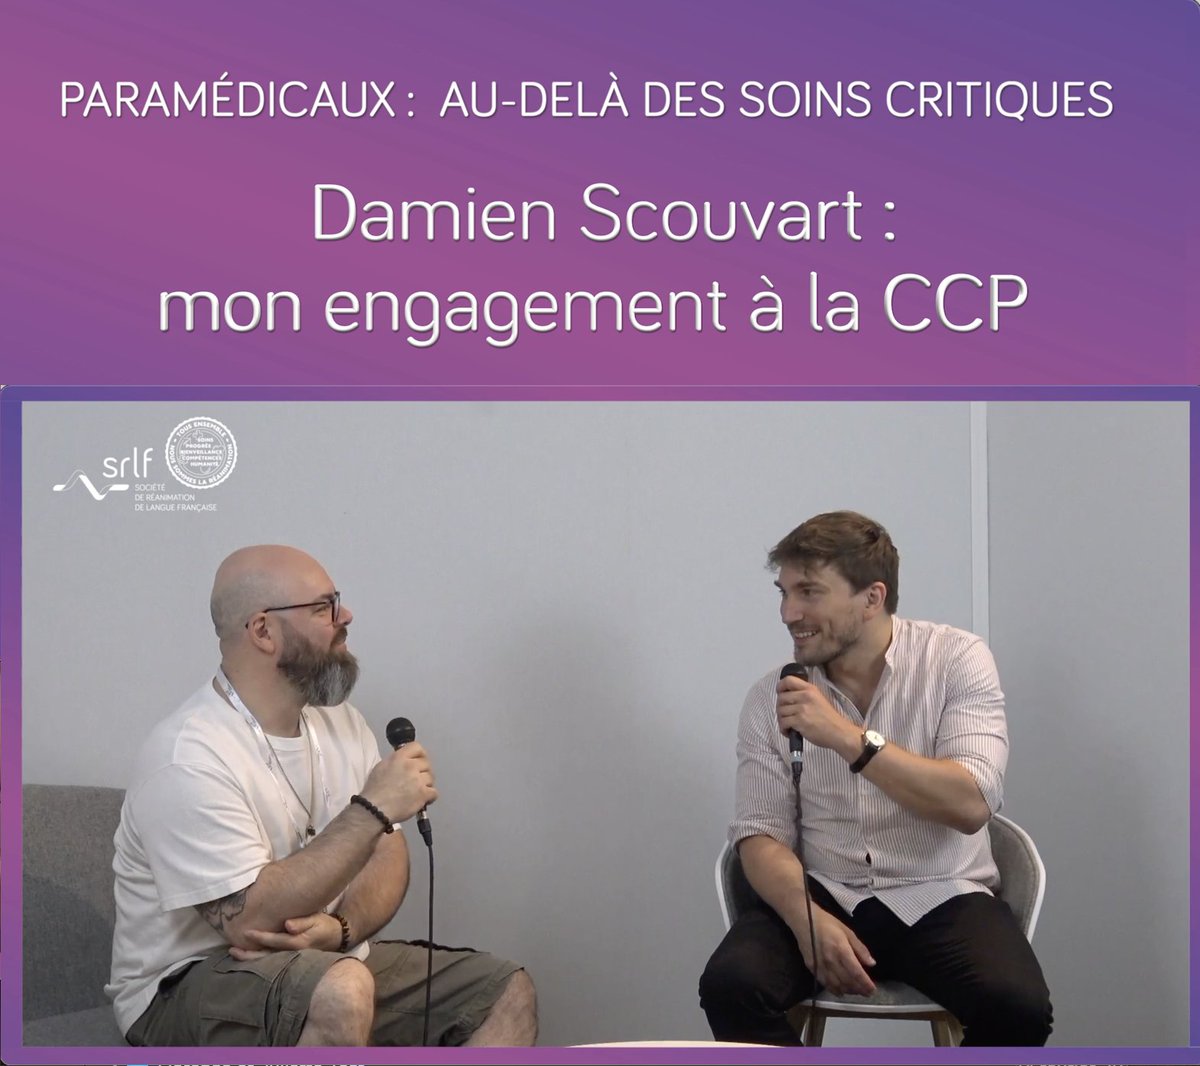 Interview de Damien Scouvart (CHU de Strasbourg), membre de la CCP. Depuis quand êtes-vous membre d’une commission à la SRLF ? Pour vous, est-ce important en tant que paramed’ d’être impliqué dans une société savante ? Voir la vidéo : zurl.co/SwVh